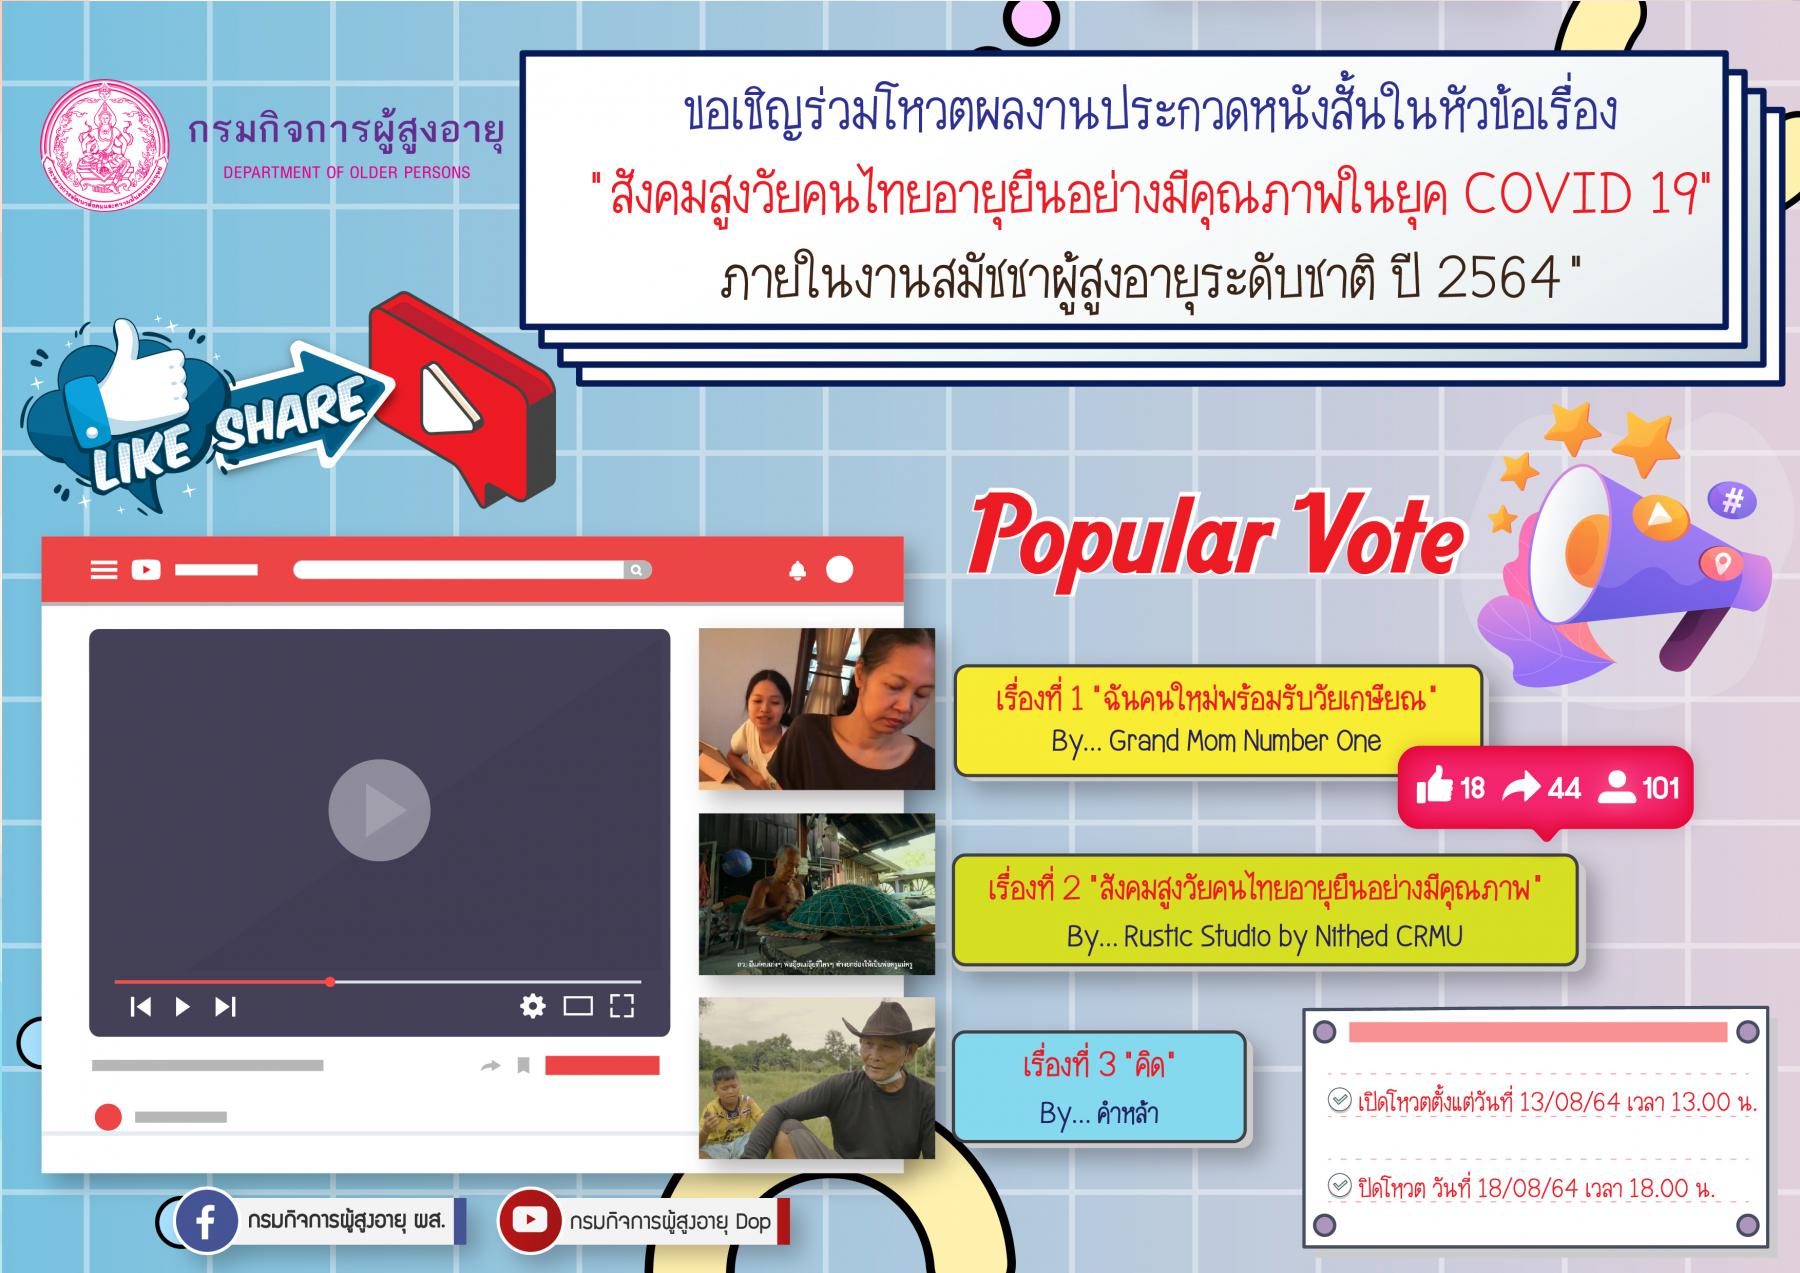 การตัดสินรางวัล Popular Vote การประกวดหนังสั้นในหัวข้อเรื่อง...“ สังคมสูงวัยคนไทยอายุยืนอย่างมีคุณภาพในยุค COVID 19” ในงานสมัชชาผู้สูงอายุระดับชาติ ปี 2564 